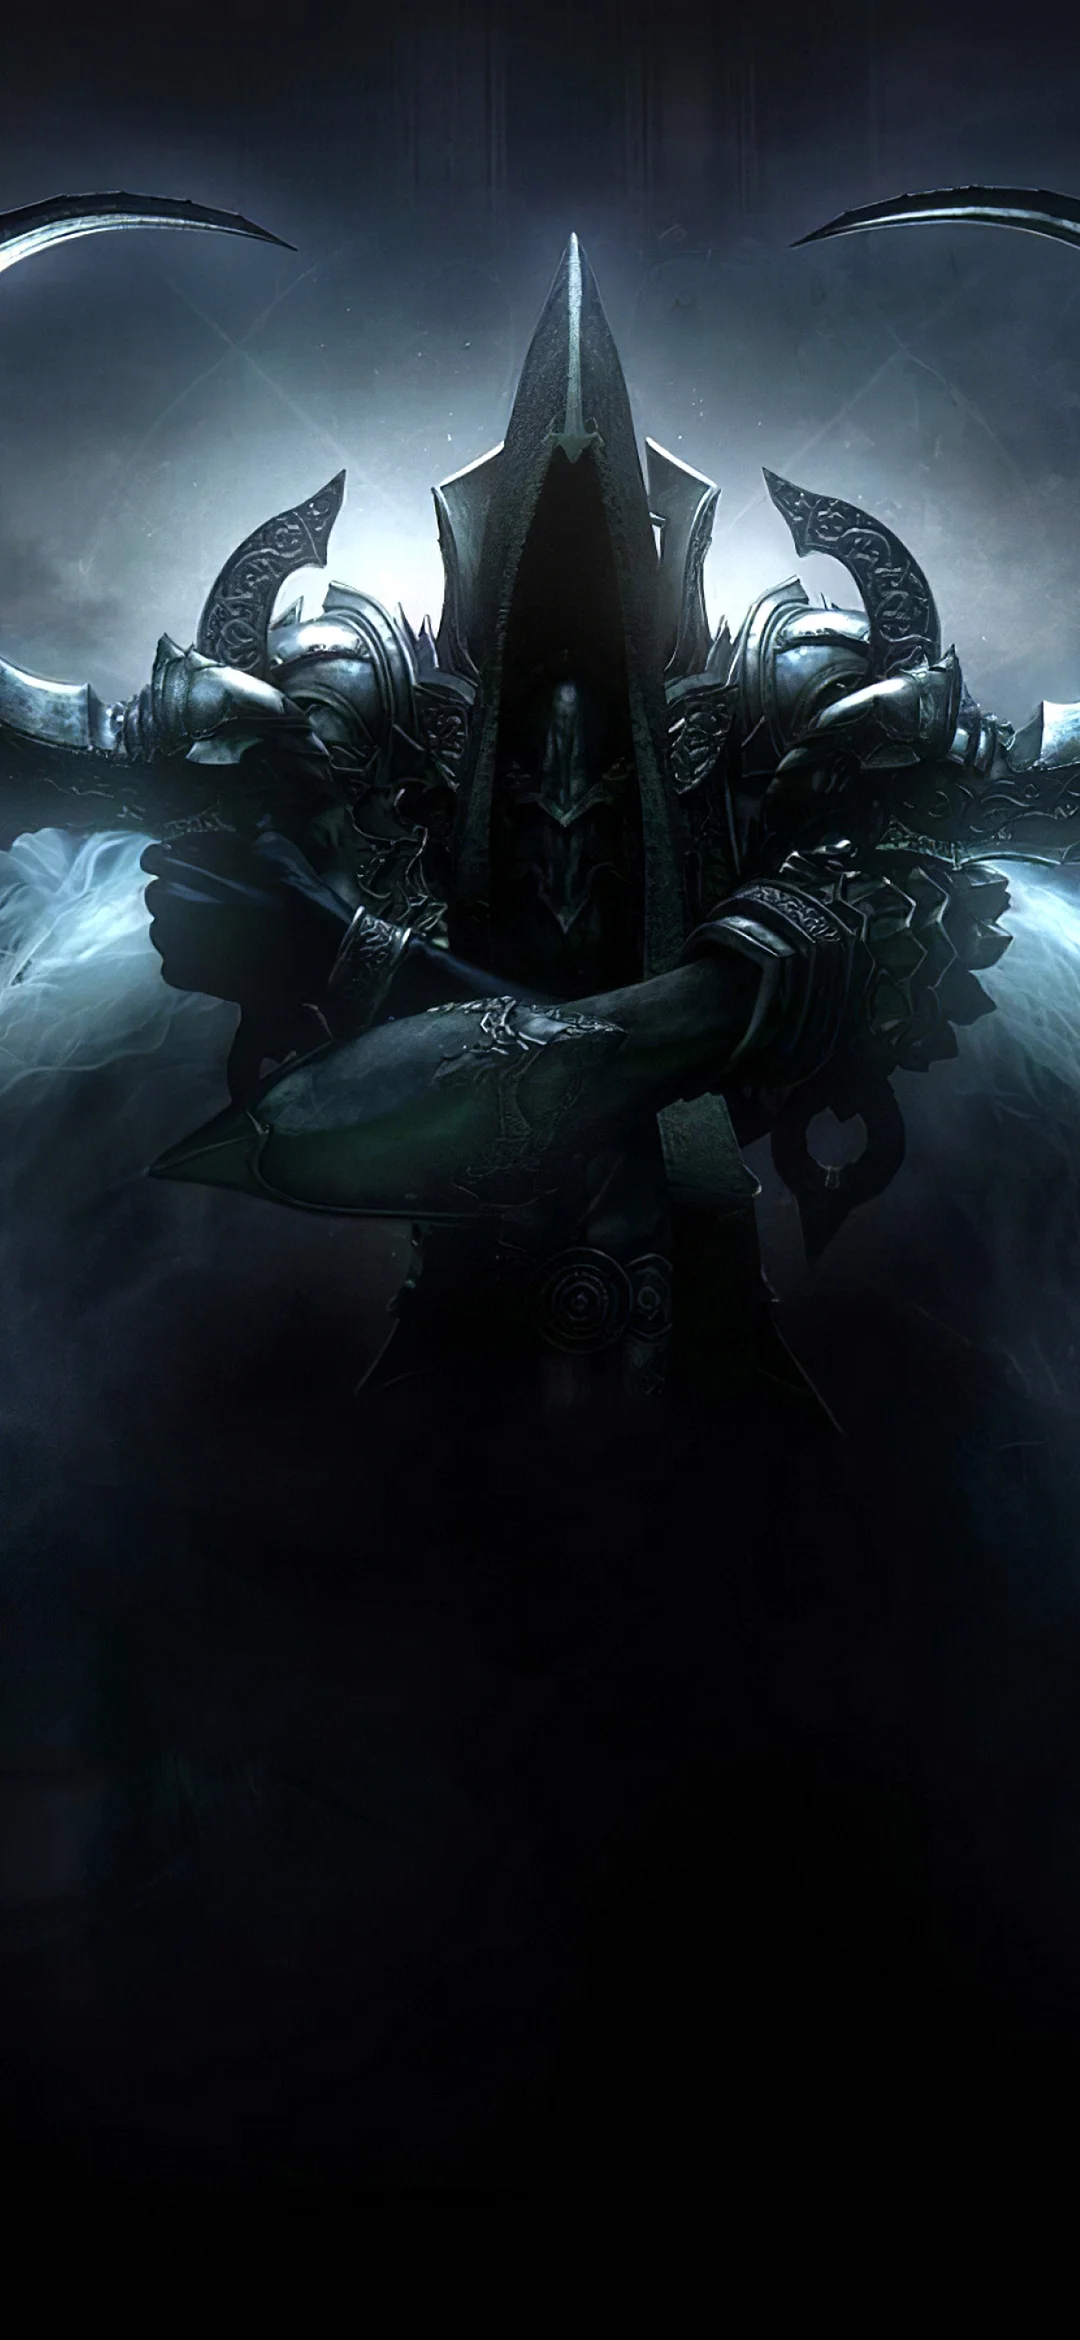 Diablo 3 Reaper Of Souls Wallpaper for iPhone 13 mini